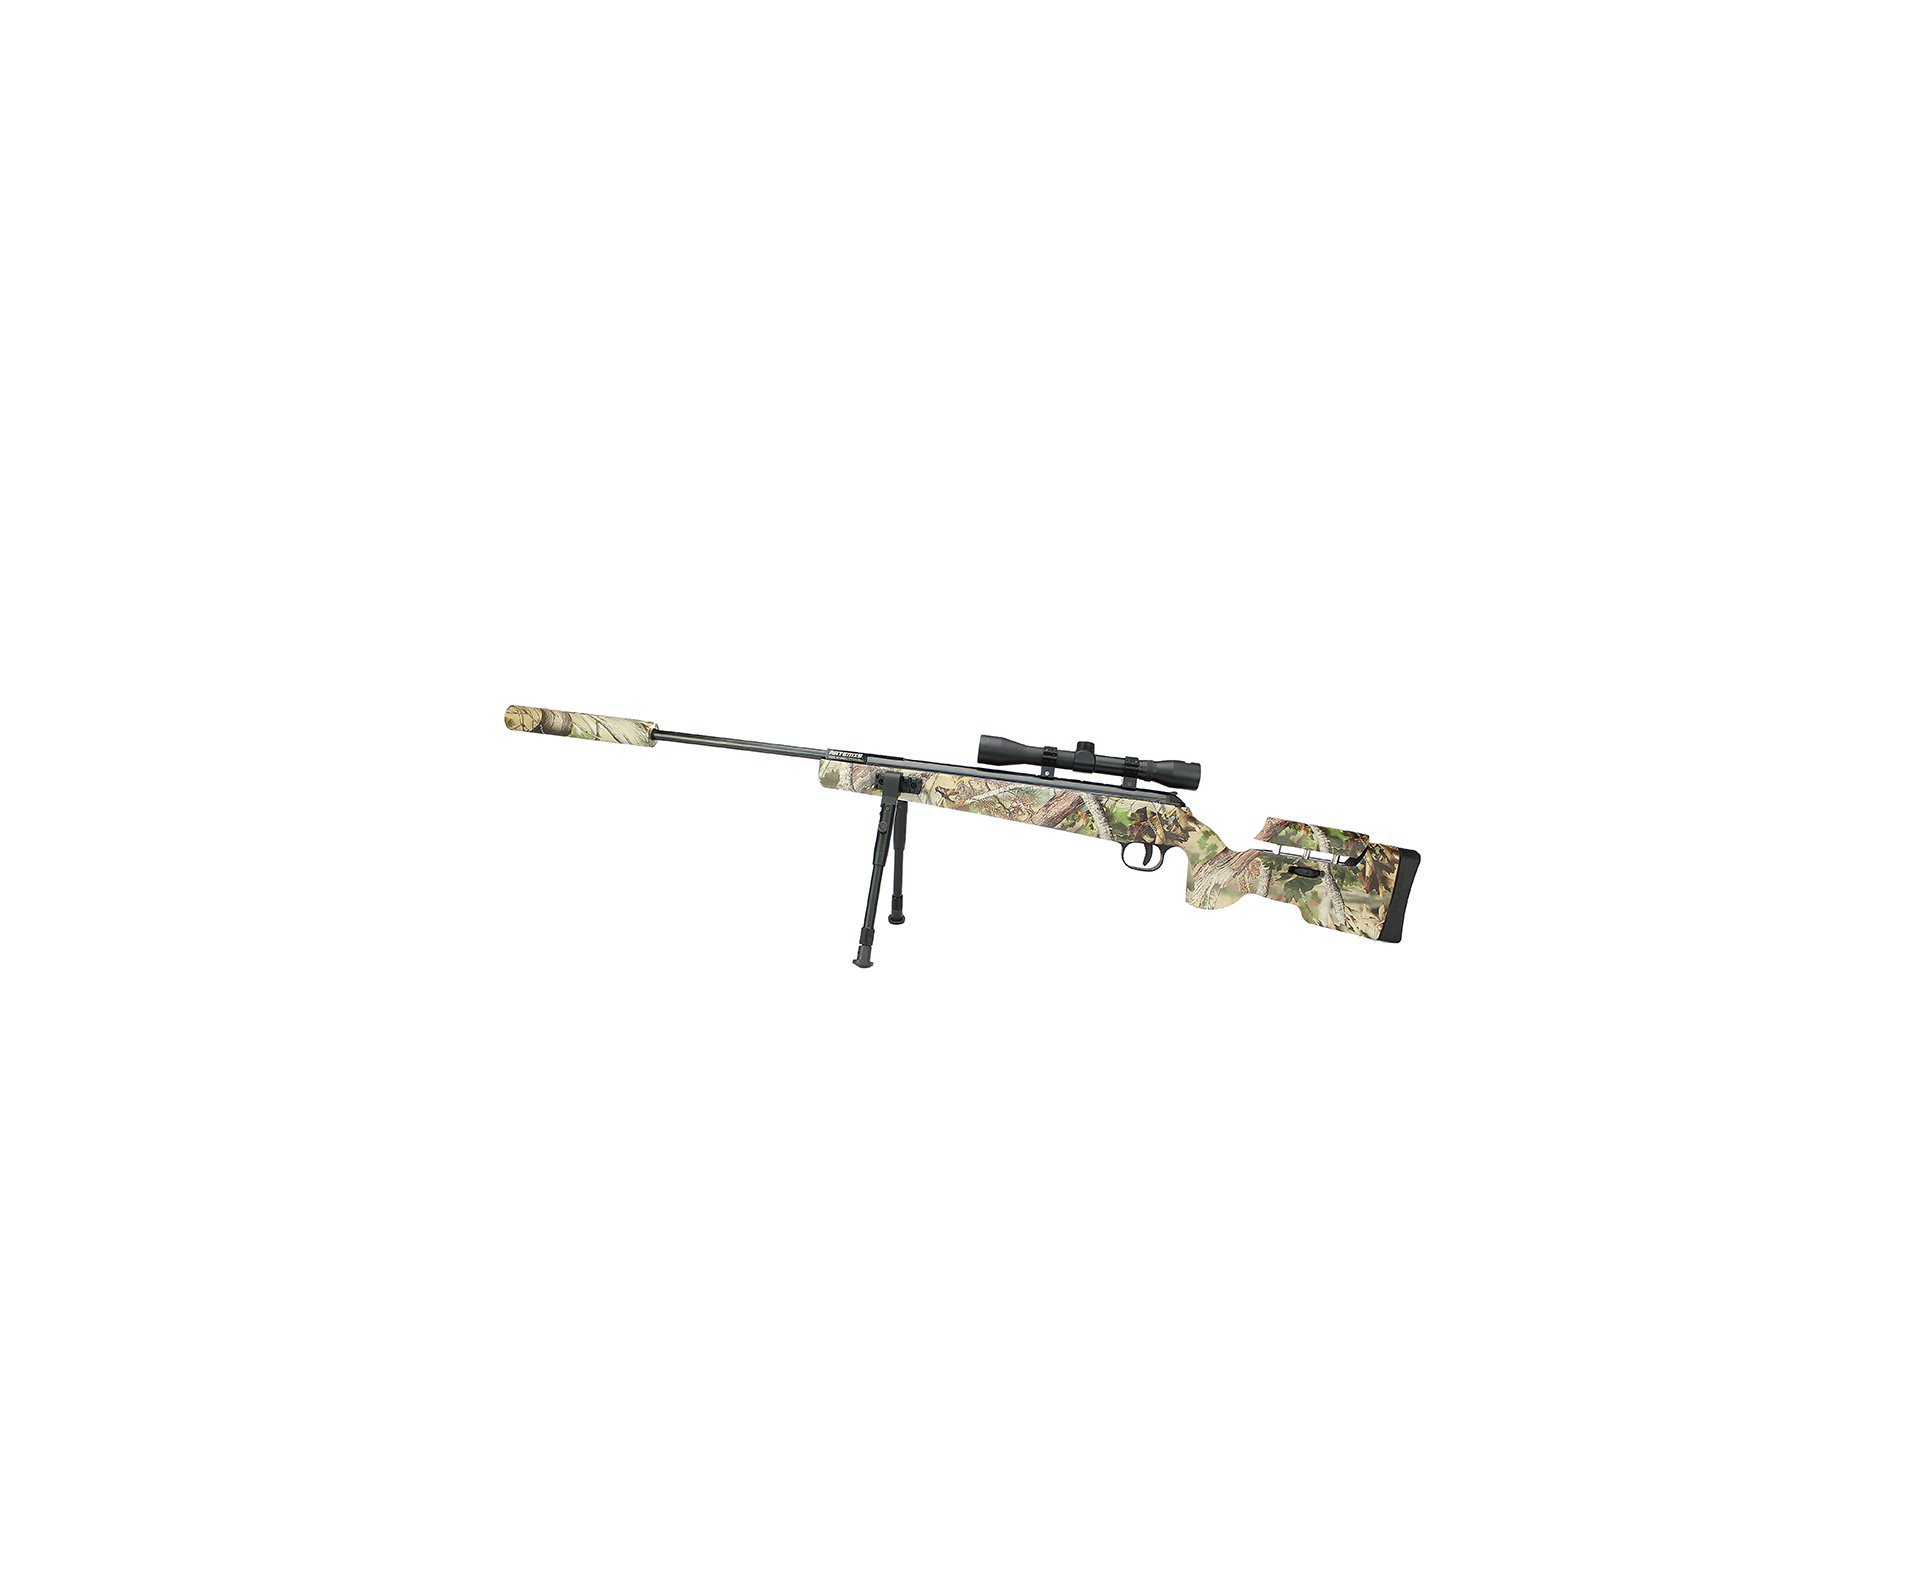 Carabina De Pressão Artemis Gp 1250 Sniper Gas Ram 70kg Camu 5,5mm + Bipé + Luneta + Supressor